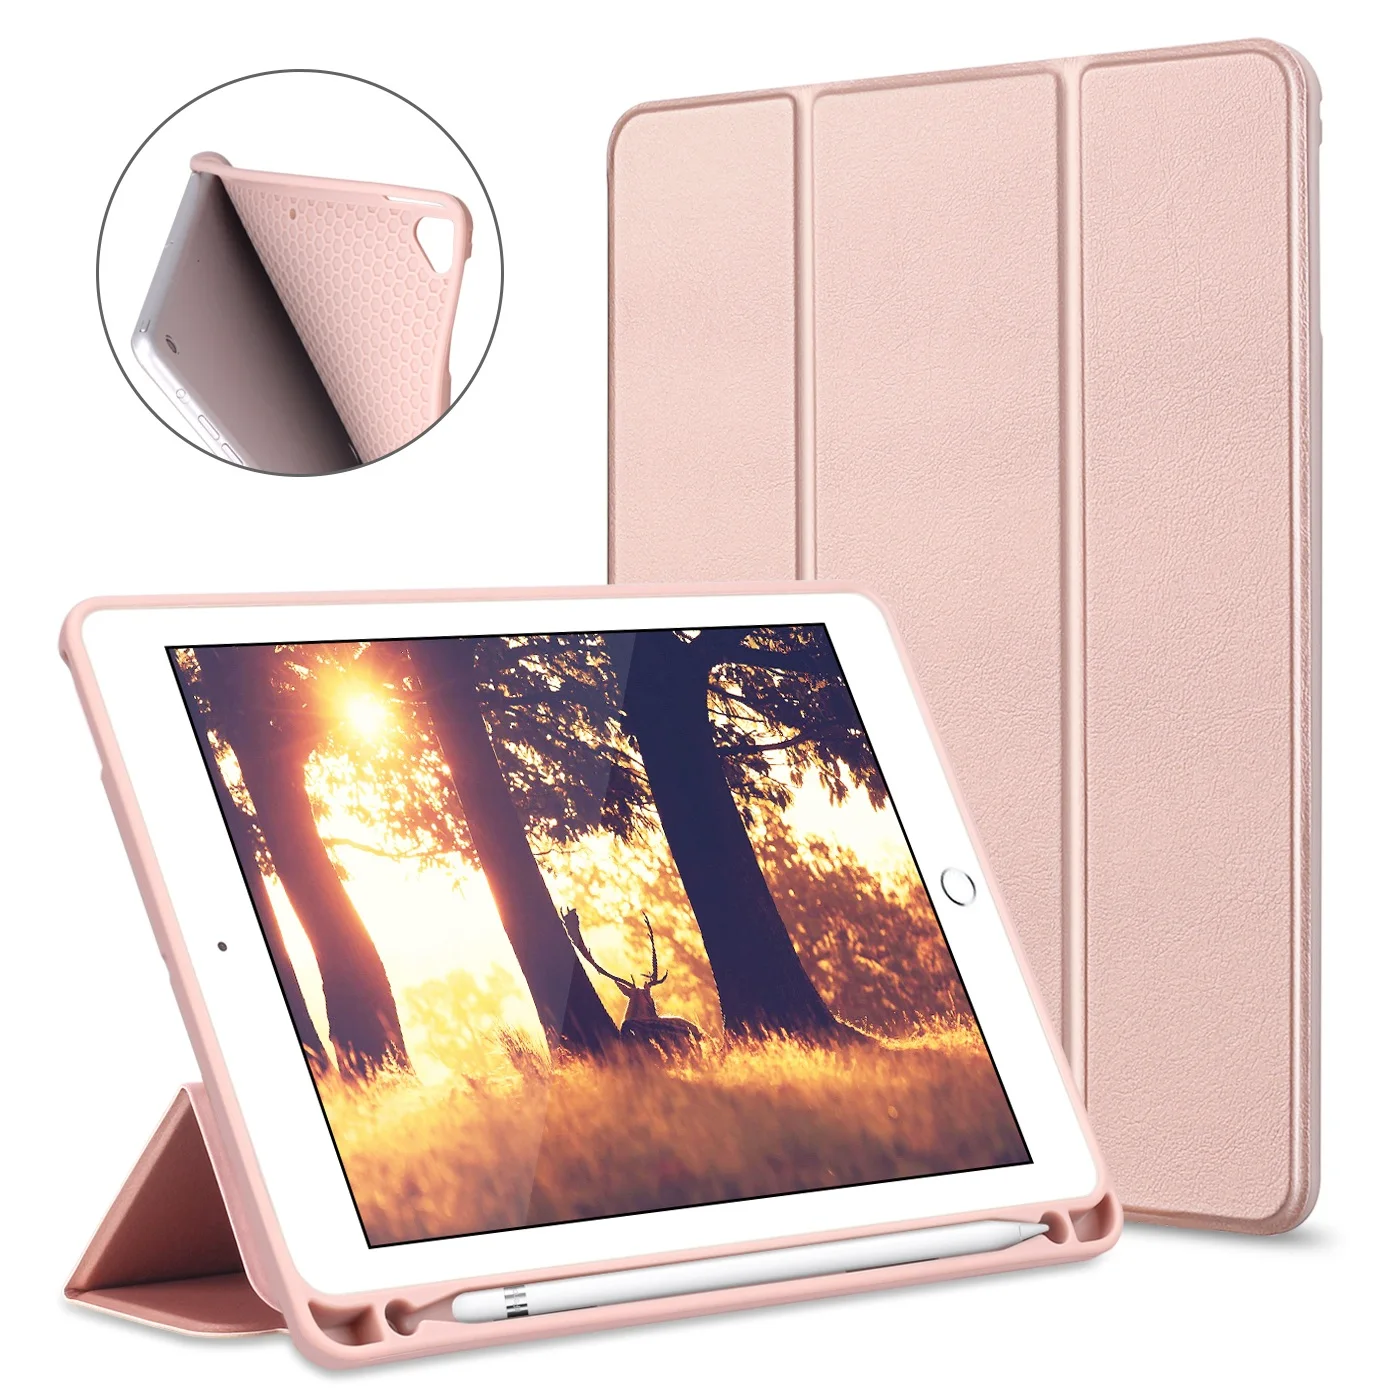 Смарт-чехол GOOJODOQ для iPad 9,7 Pro 9,7 с держателем карандаша, силиконовый мягкий чехол для iPad Air 2 Air 1 6th Gen, чехол Funda - Цвет: rose gold